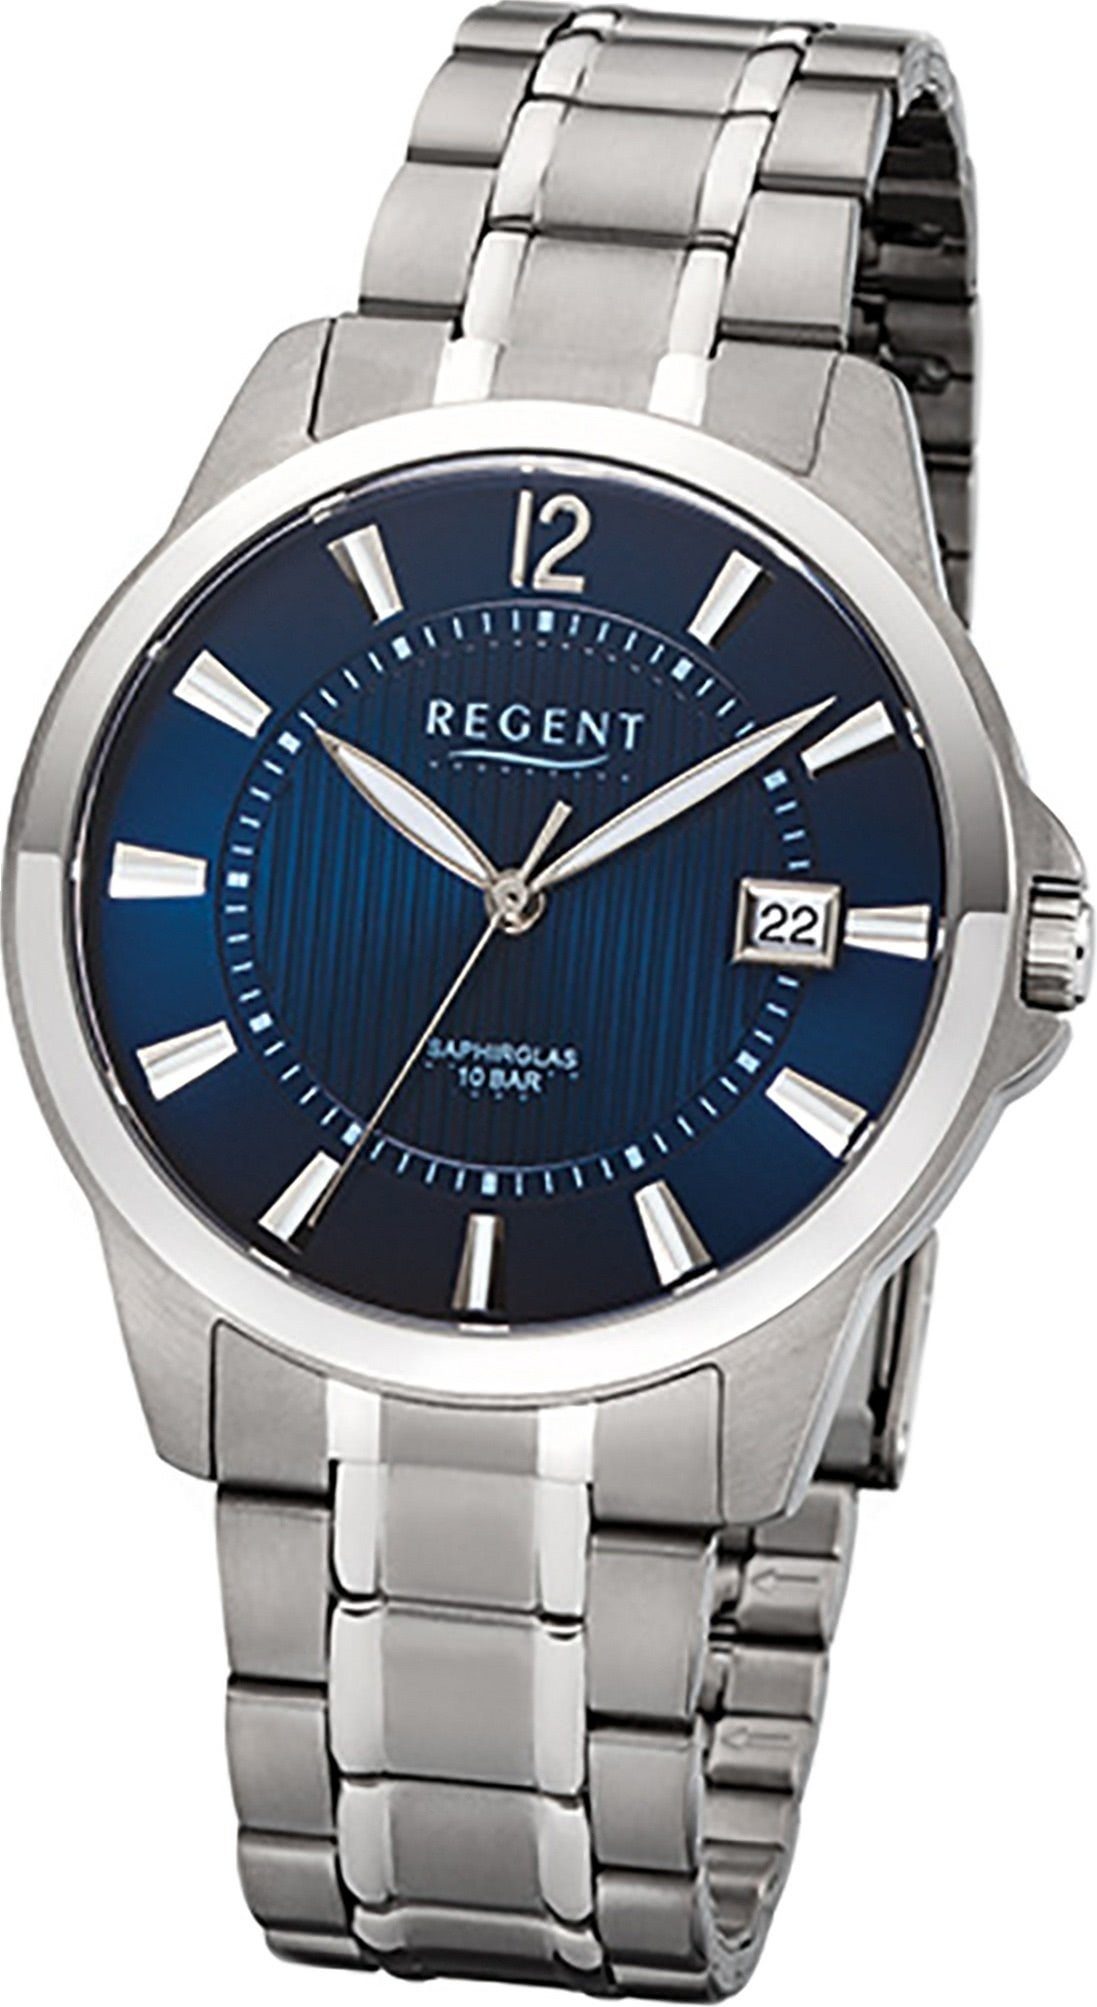 Titan Quarzuhr, Regent Herrenuhr Uhr (ca. Herren Quarzuhr Gehäuse, rundes 39mm) Titanarmband silber, mittel grau, F-1111 Regent